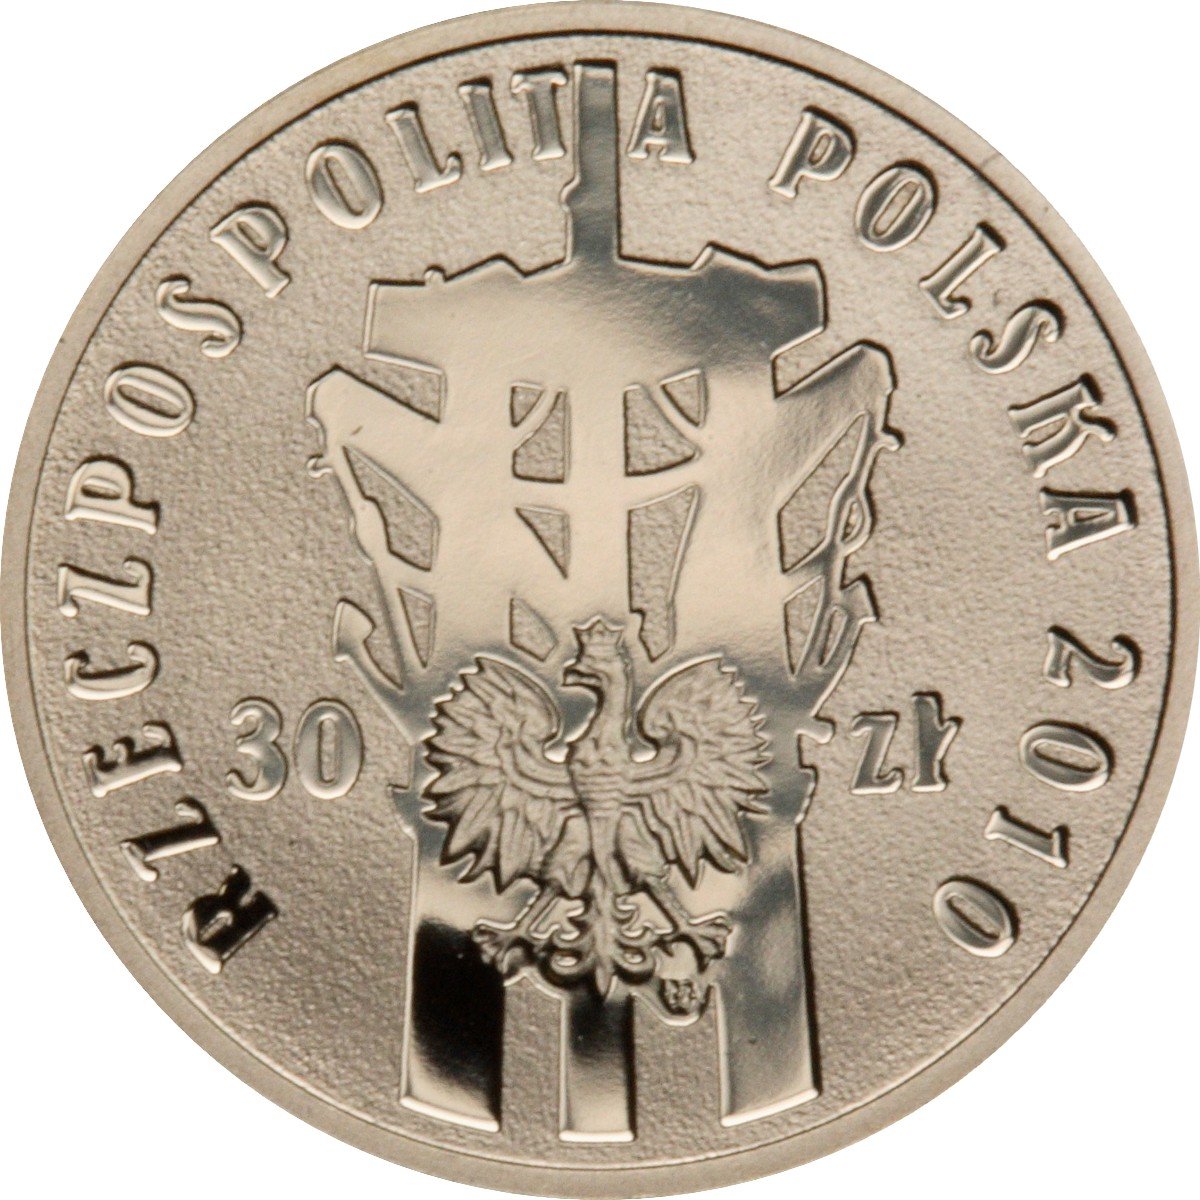 PL 30 Zloty 2010 monogram MW